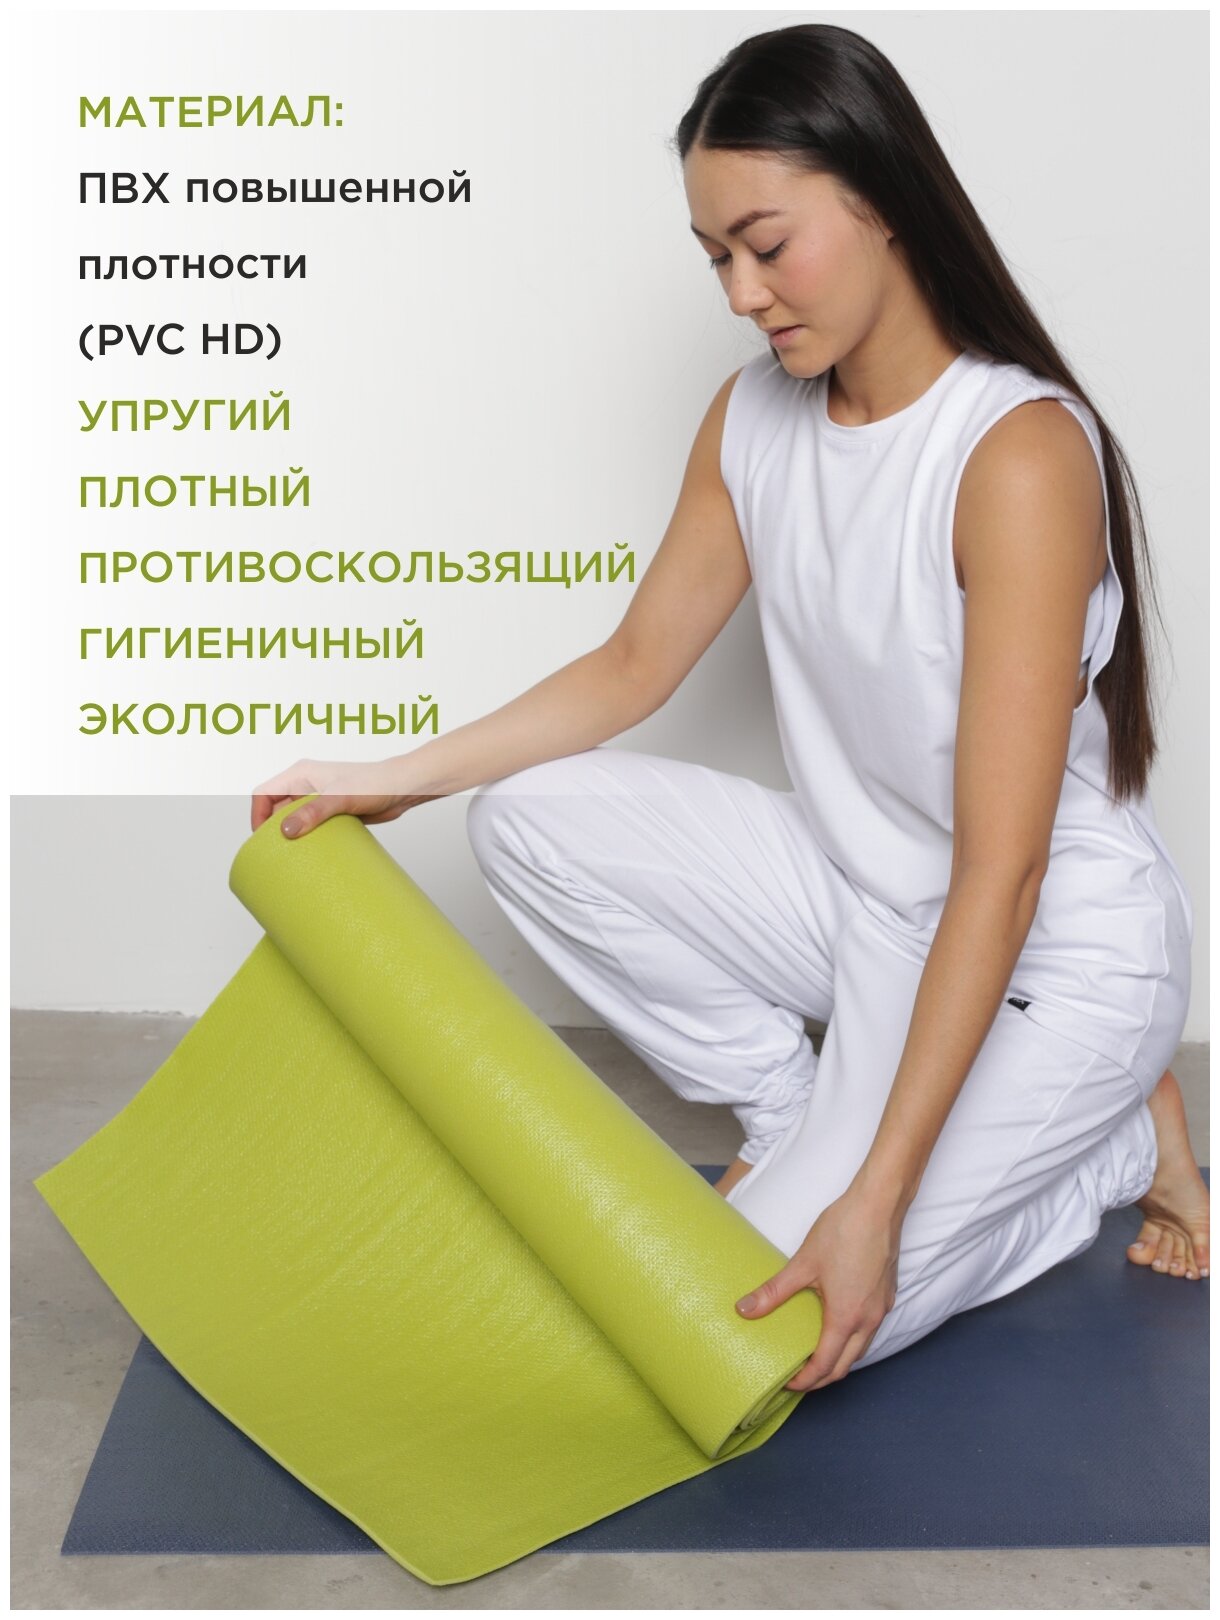 Коврик для йоги и фитнеса RamaYoga Yin-Yang PRO, зеленый, размер 220 х 60 х 0,45 см